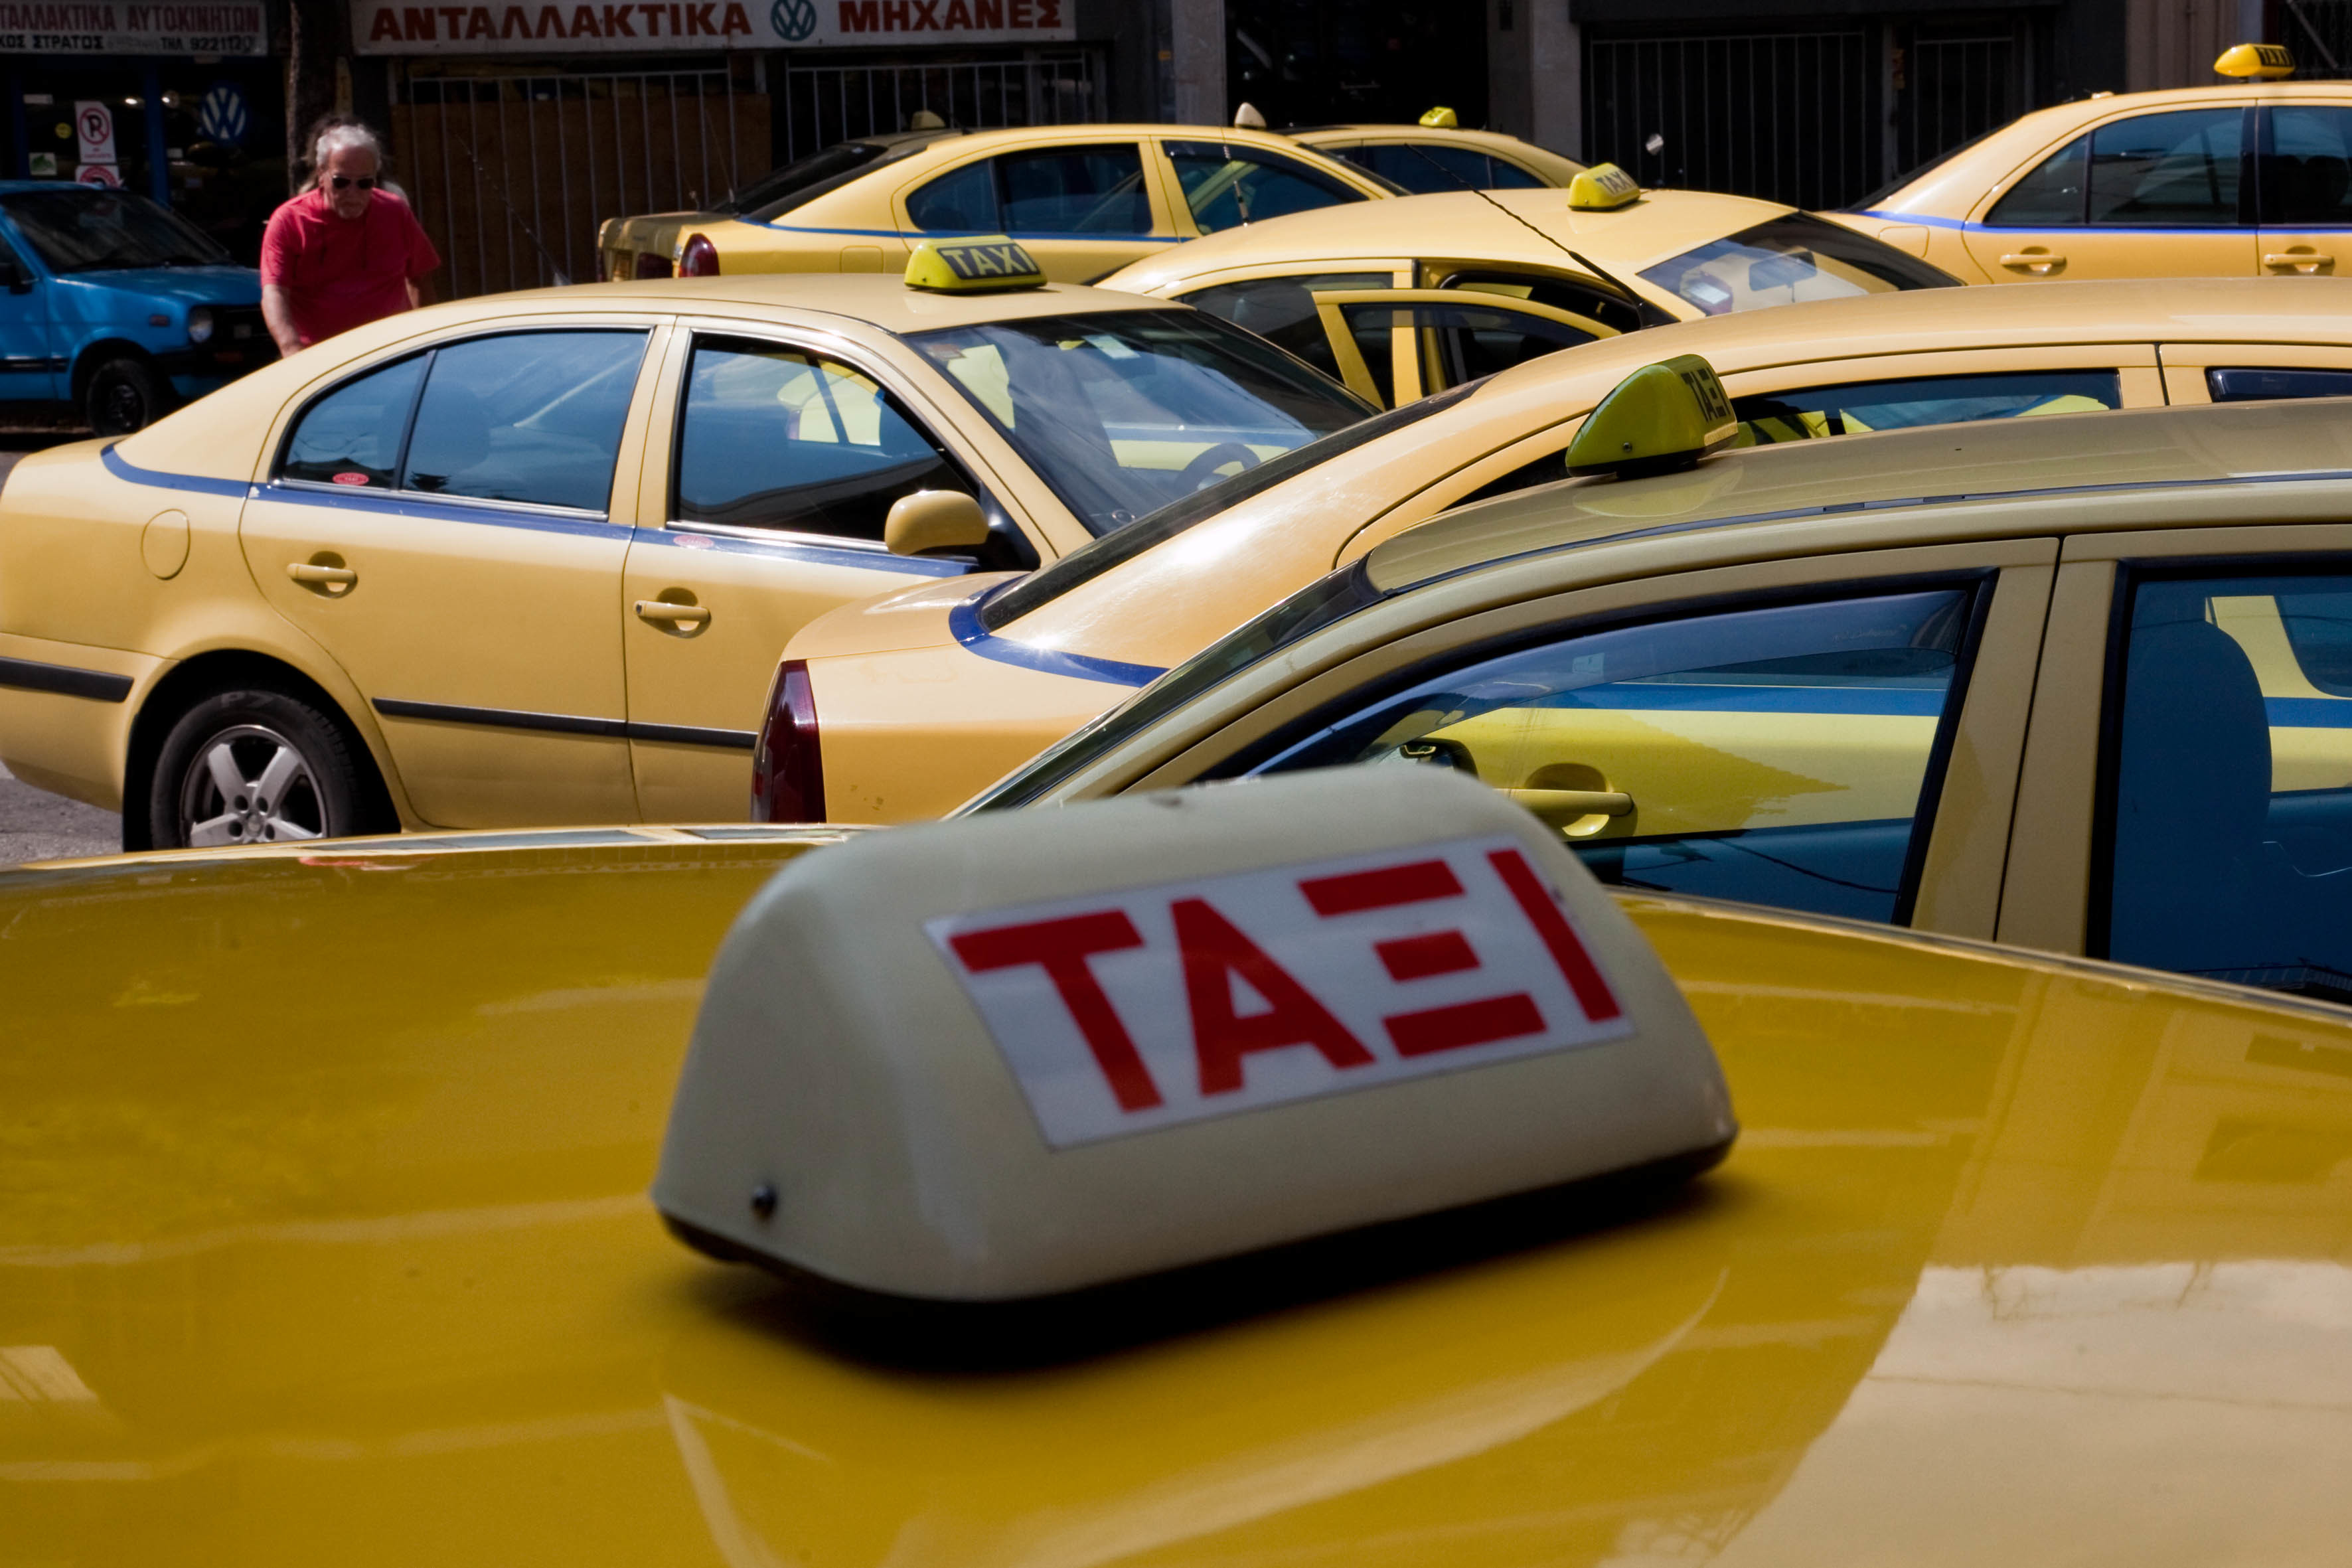 Οι νέες αλλαγές για τα ταξί – Ο αριθμός των αδειών και ποιοι έχουν προτεραιότητα